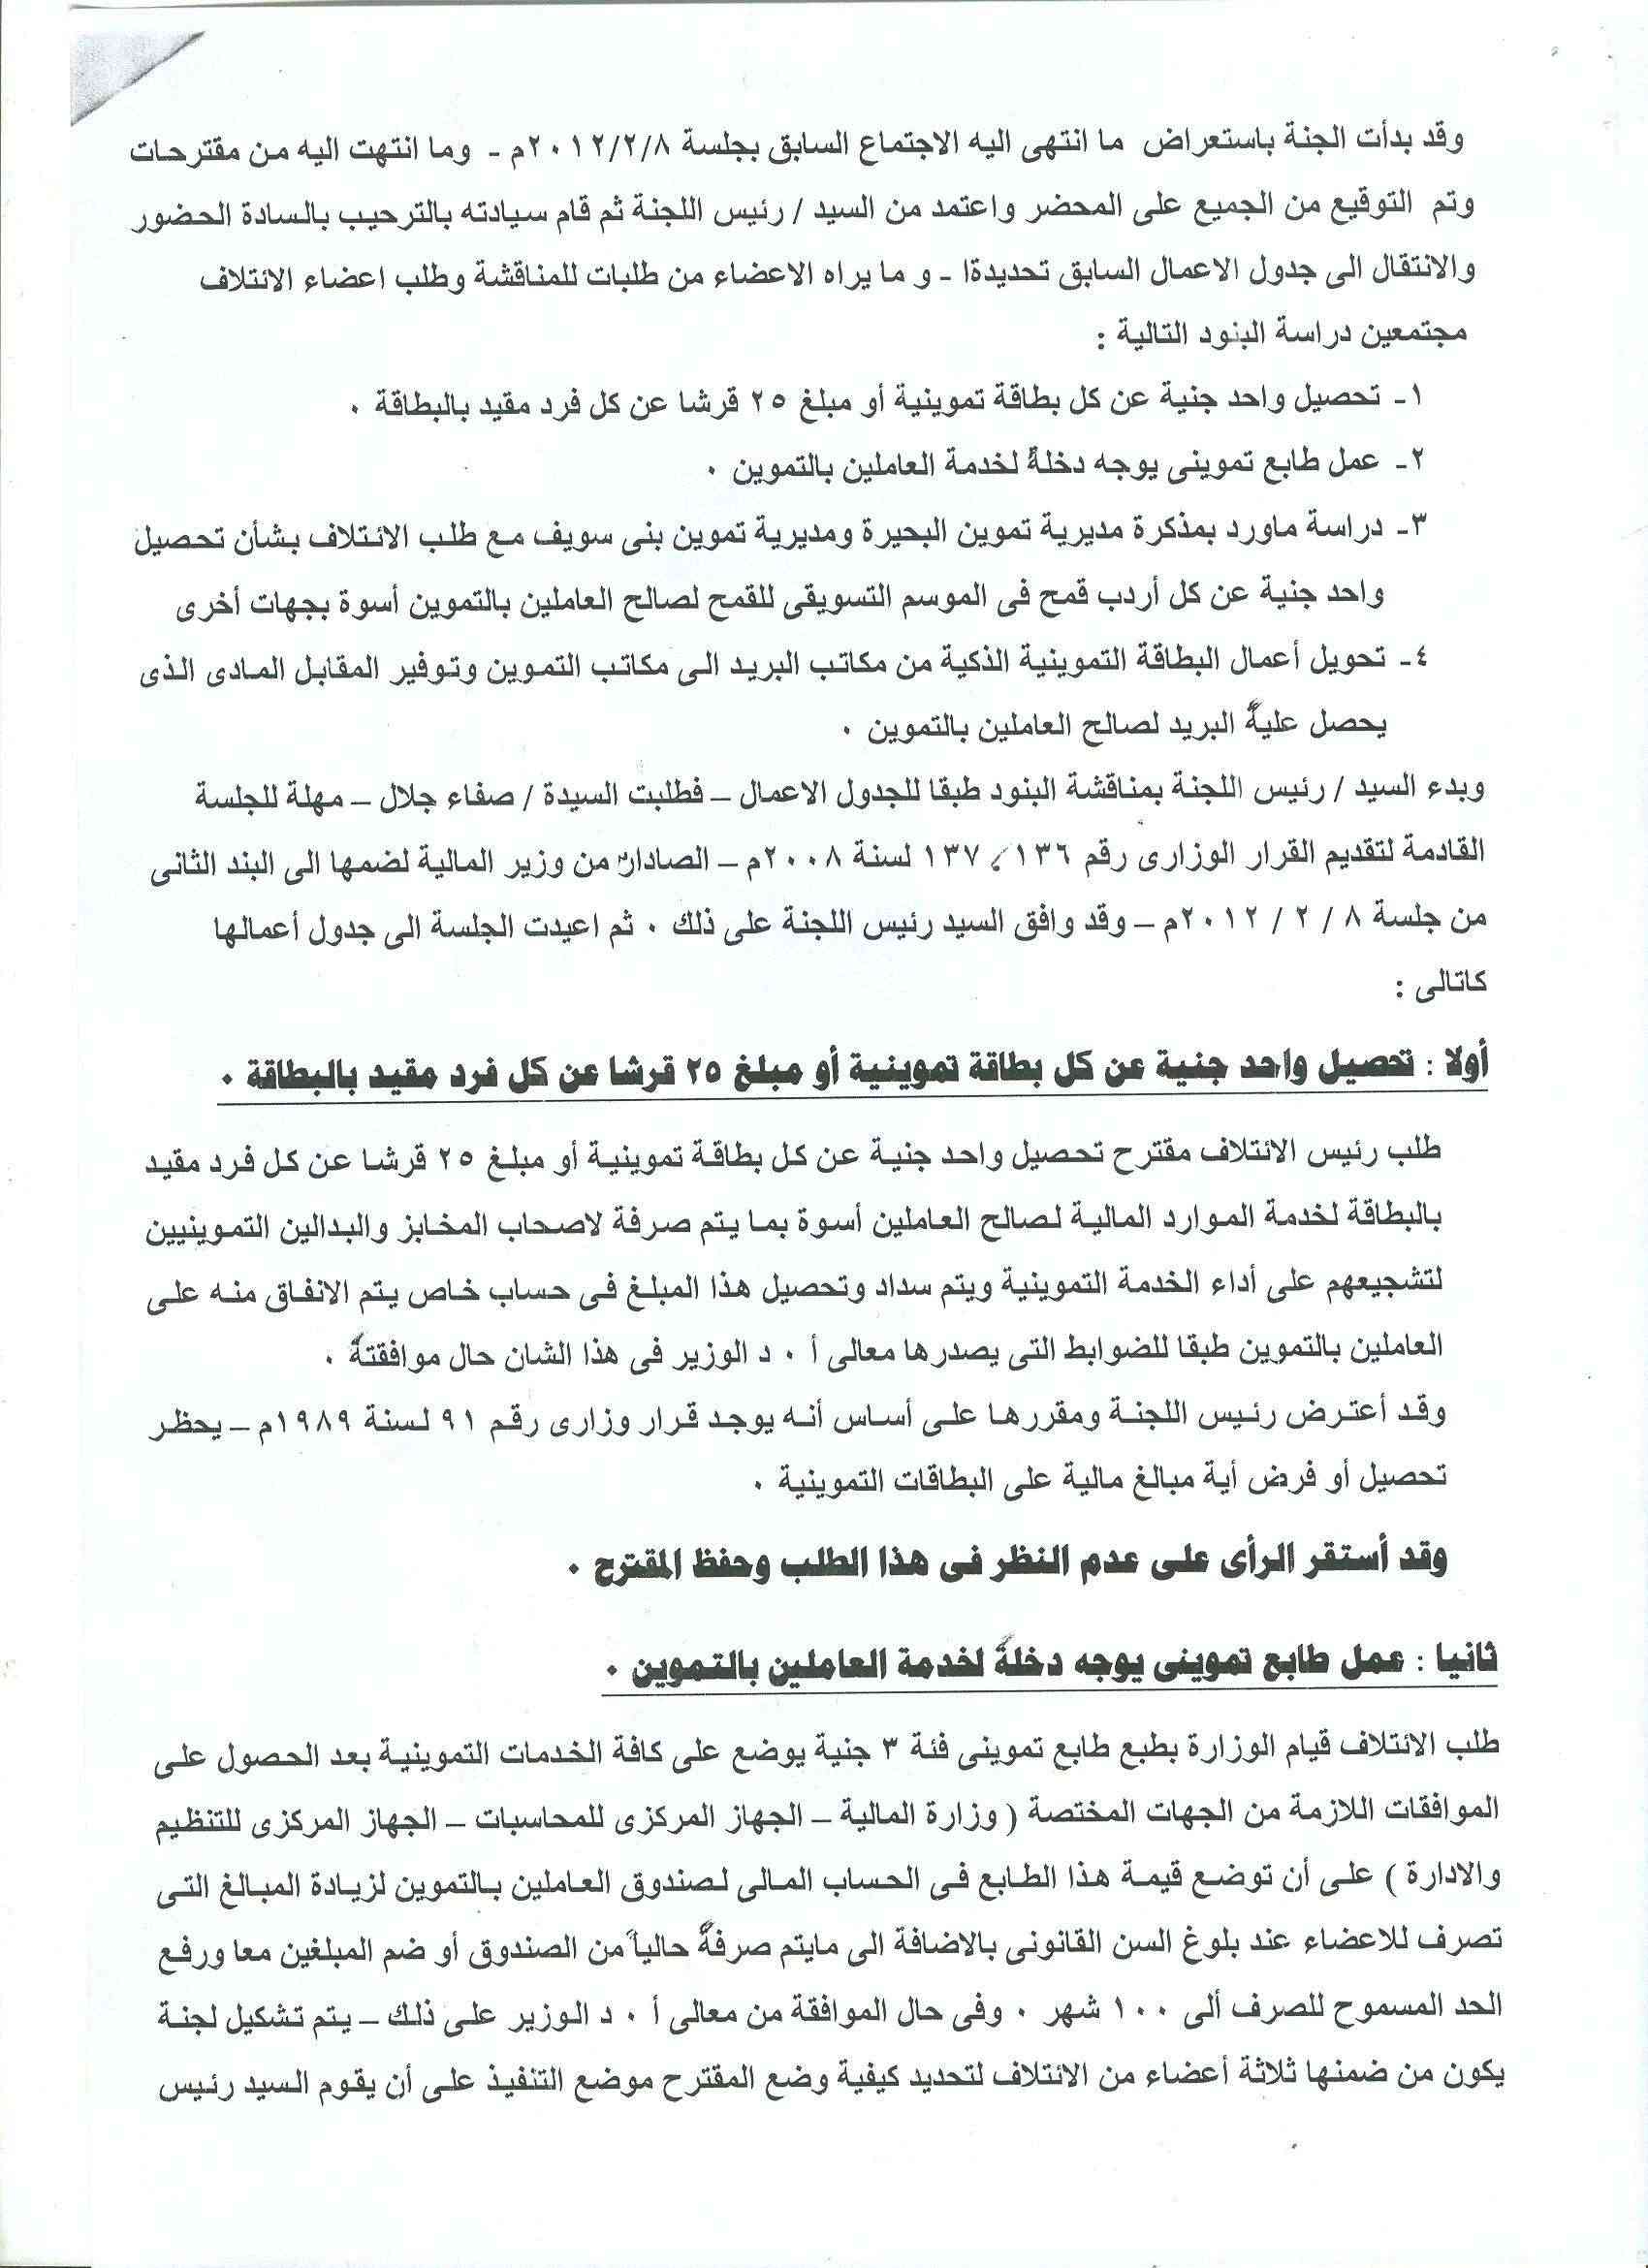 أعمال لجنة الإئتلاف العام للعاملين بتموين مصر بالوزاره خلال شهر فبراير 2012 15-210